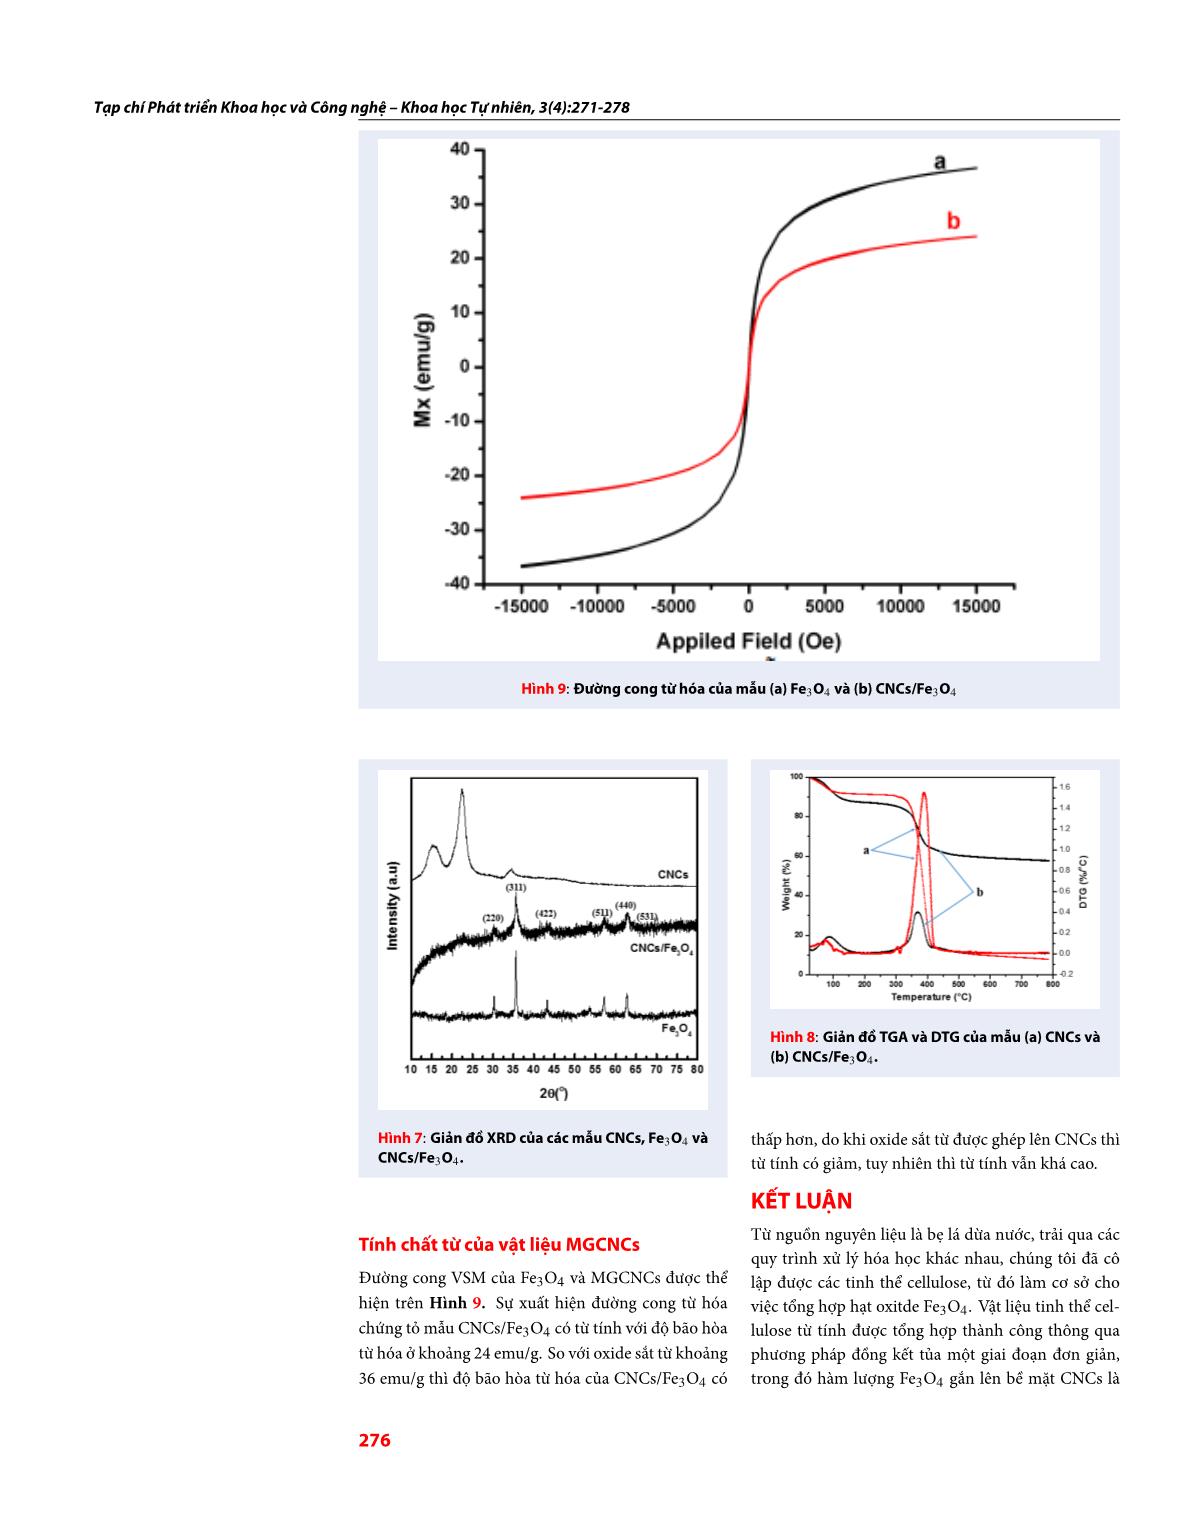 Tổng hợp hạt Oxide sắt từ trên bề mặt nano tinh thể Cellulose bằng phương pháp đồng kết tủa trang 6